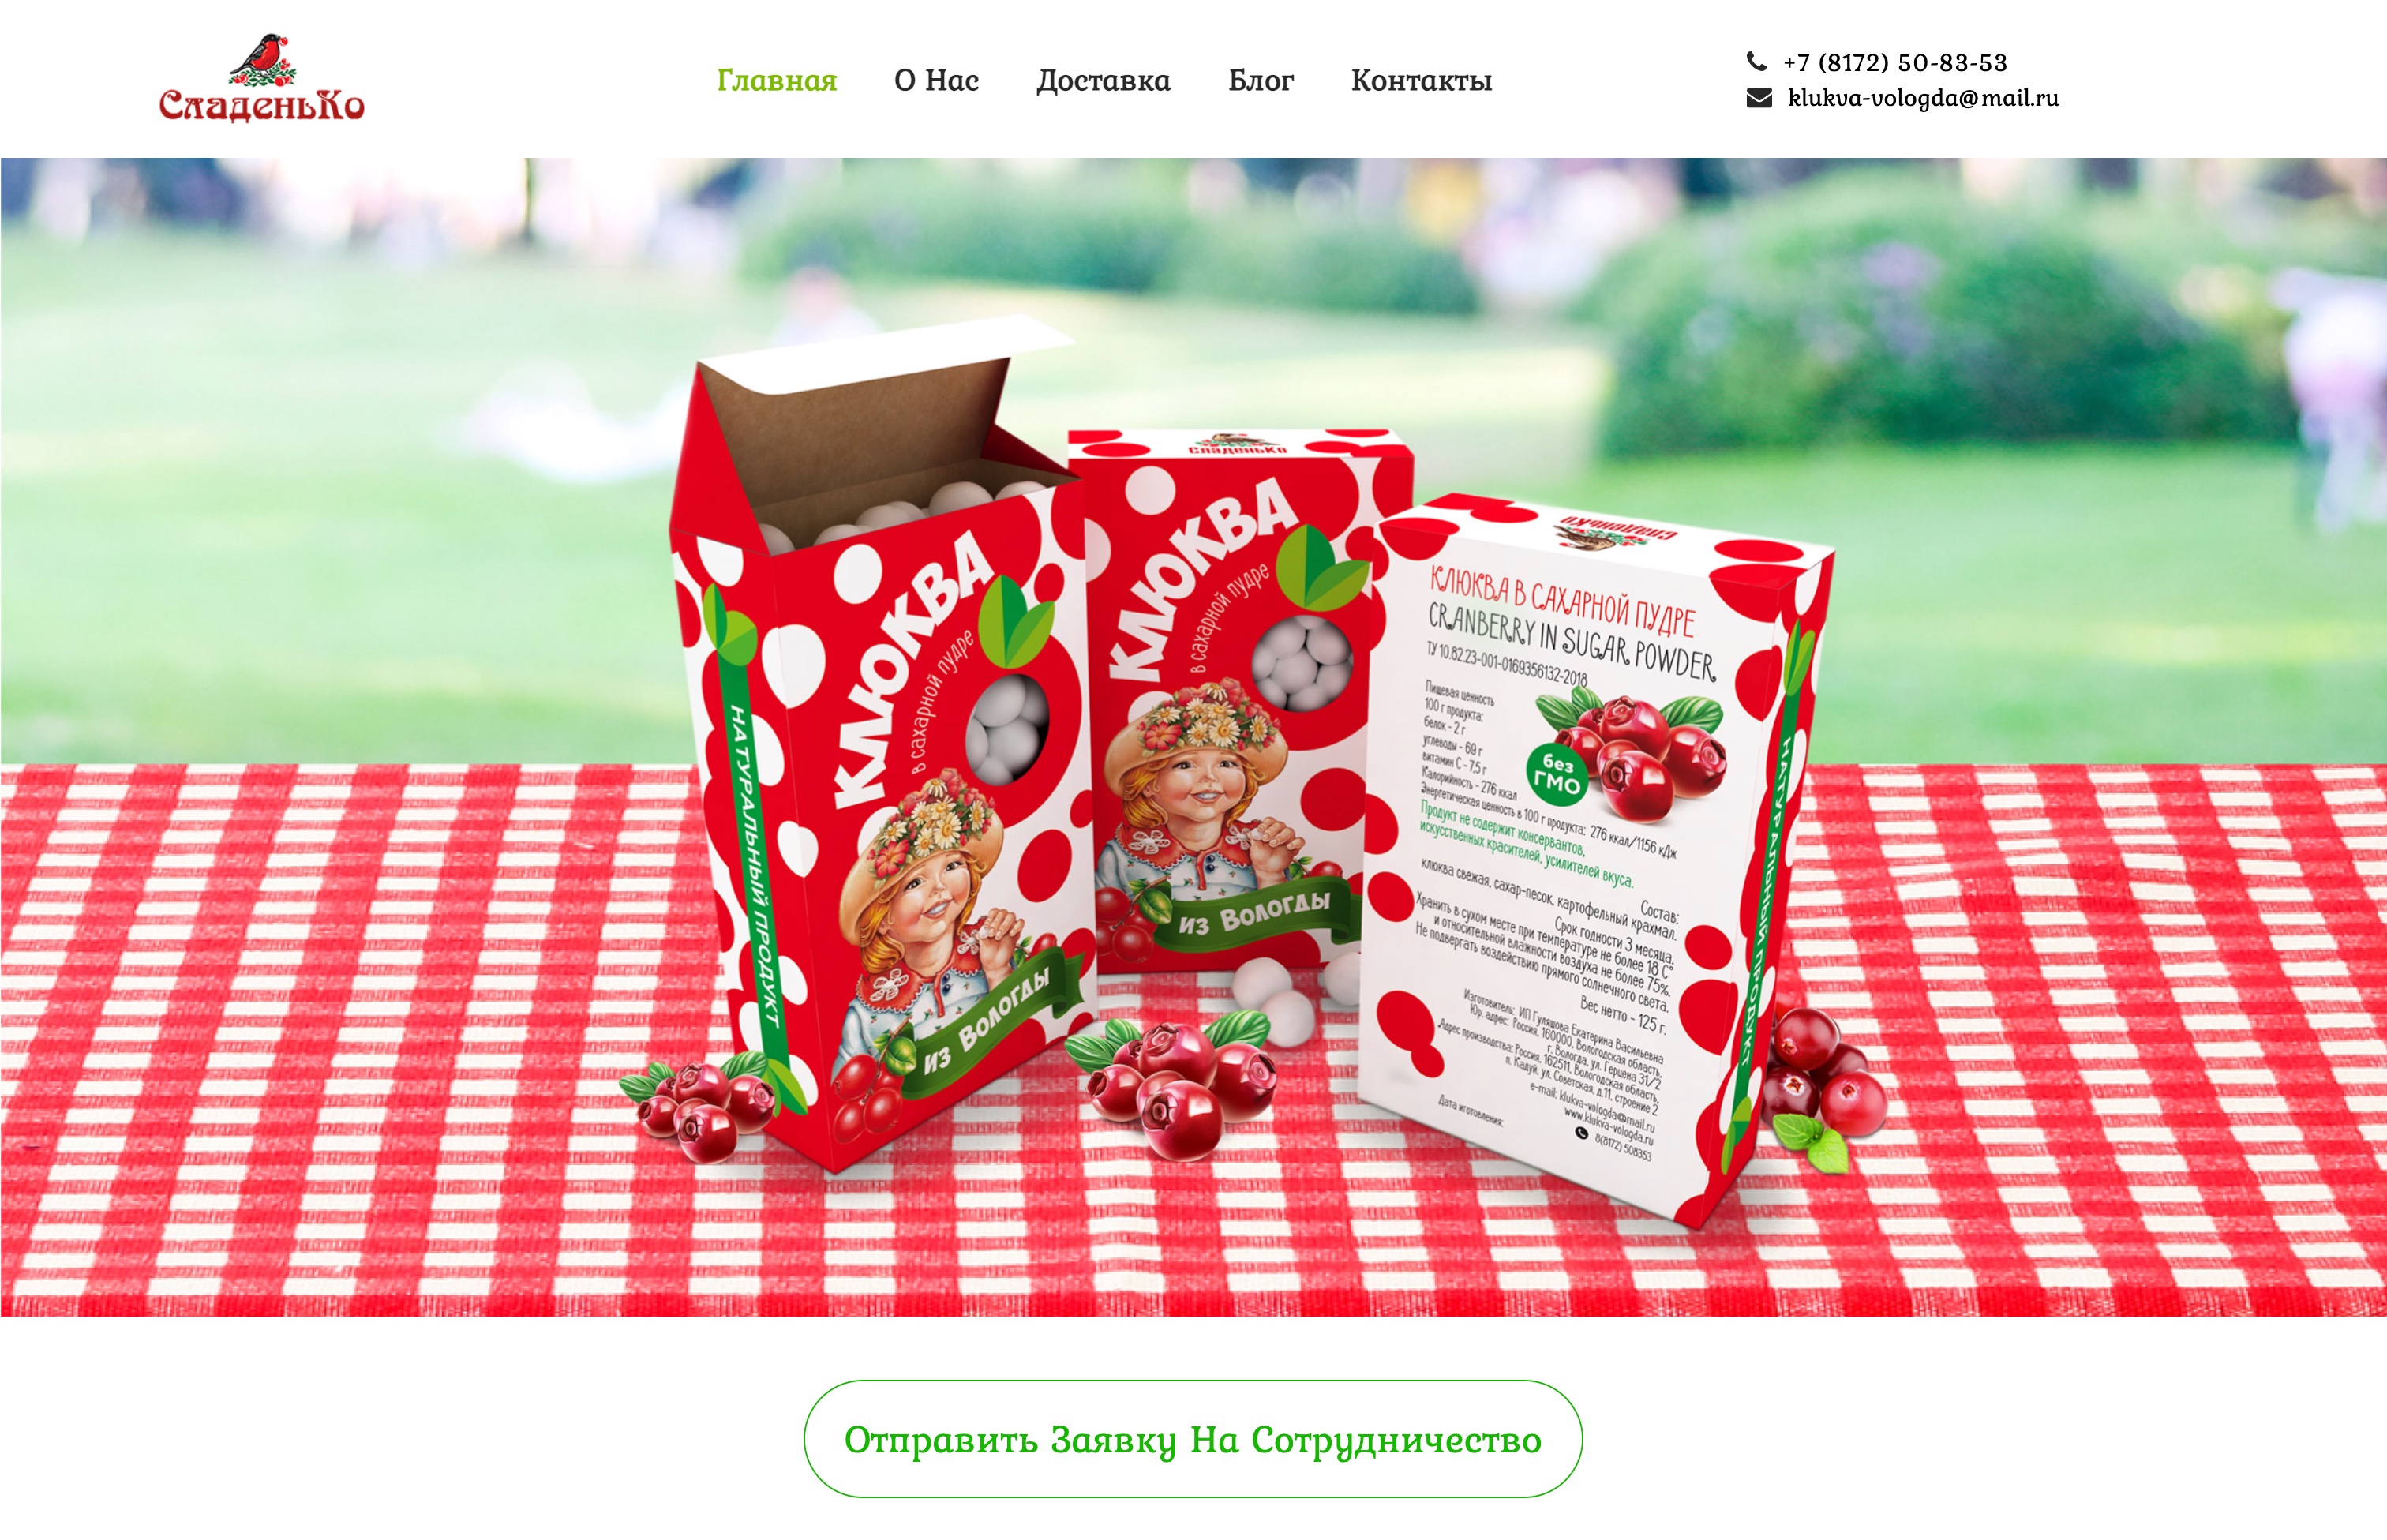 Сайт-визитка производителя клюквы в сахарной пудре "СладеньКо"